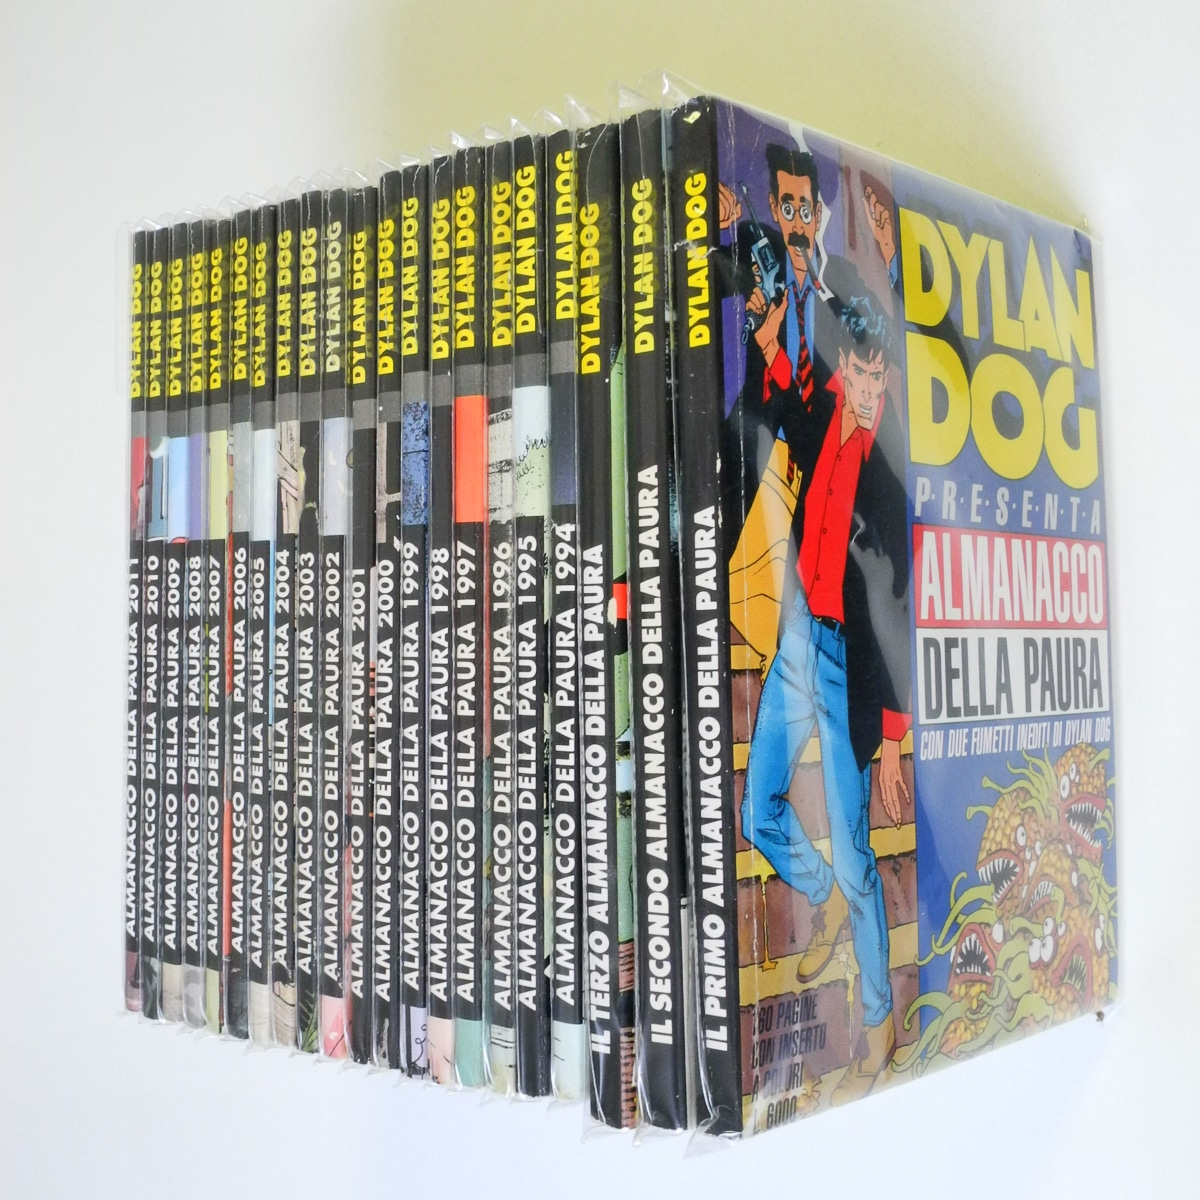 Dylan Dog Almanacco della Paura Sequenza Completa dal 1991 al 2011